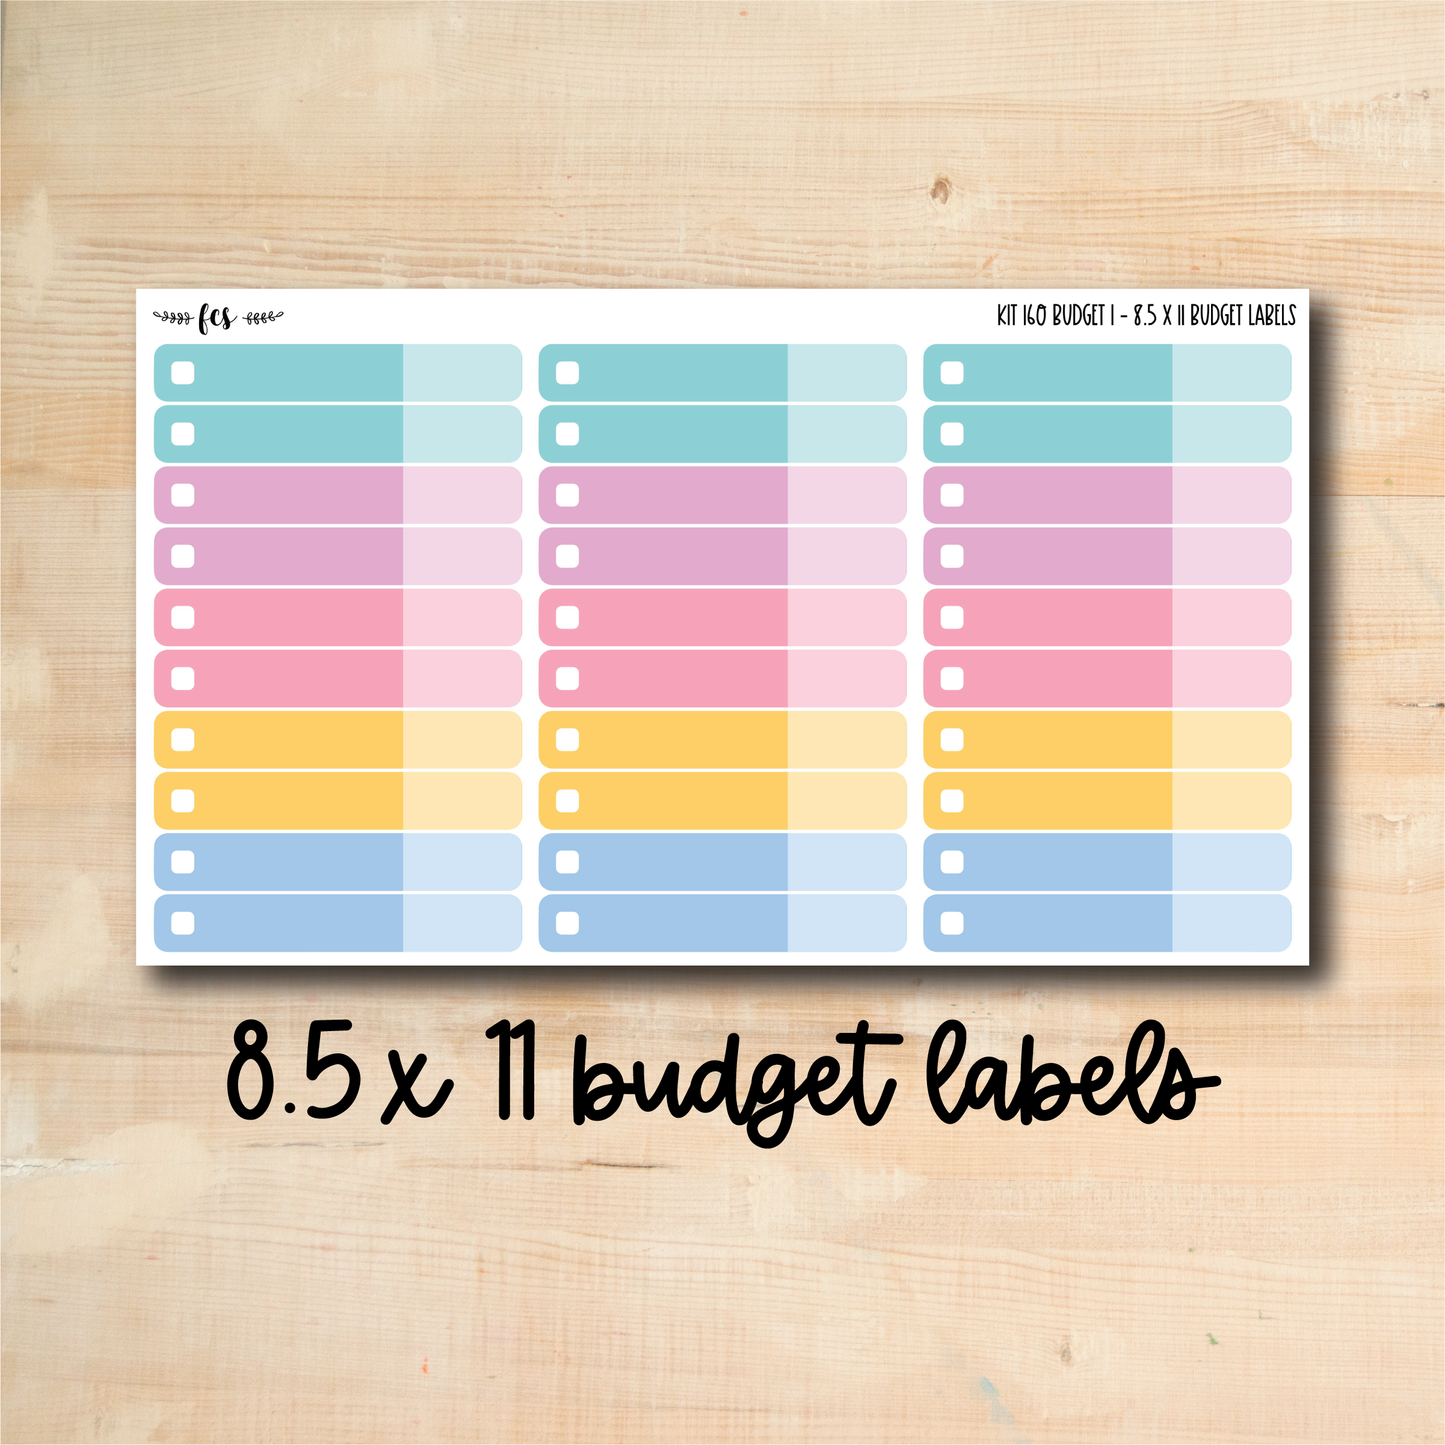 BUDGET-160 || EGG HUNT 8.5x11 budget labels